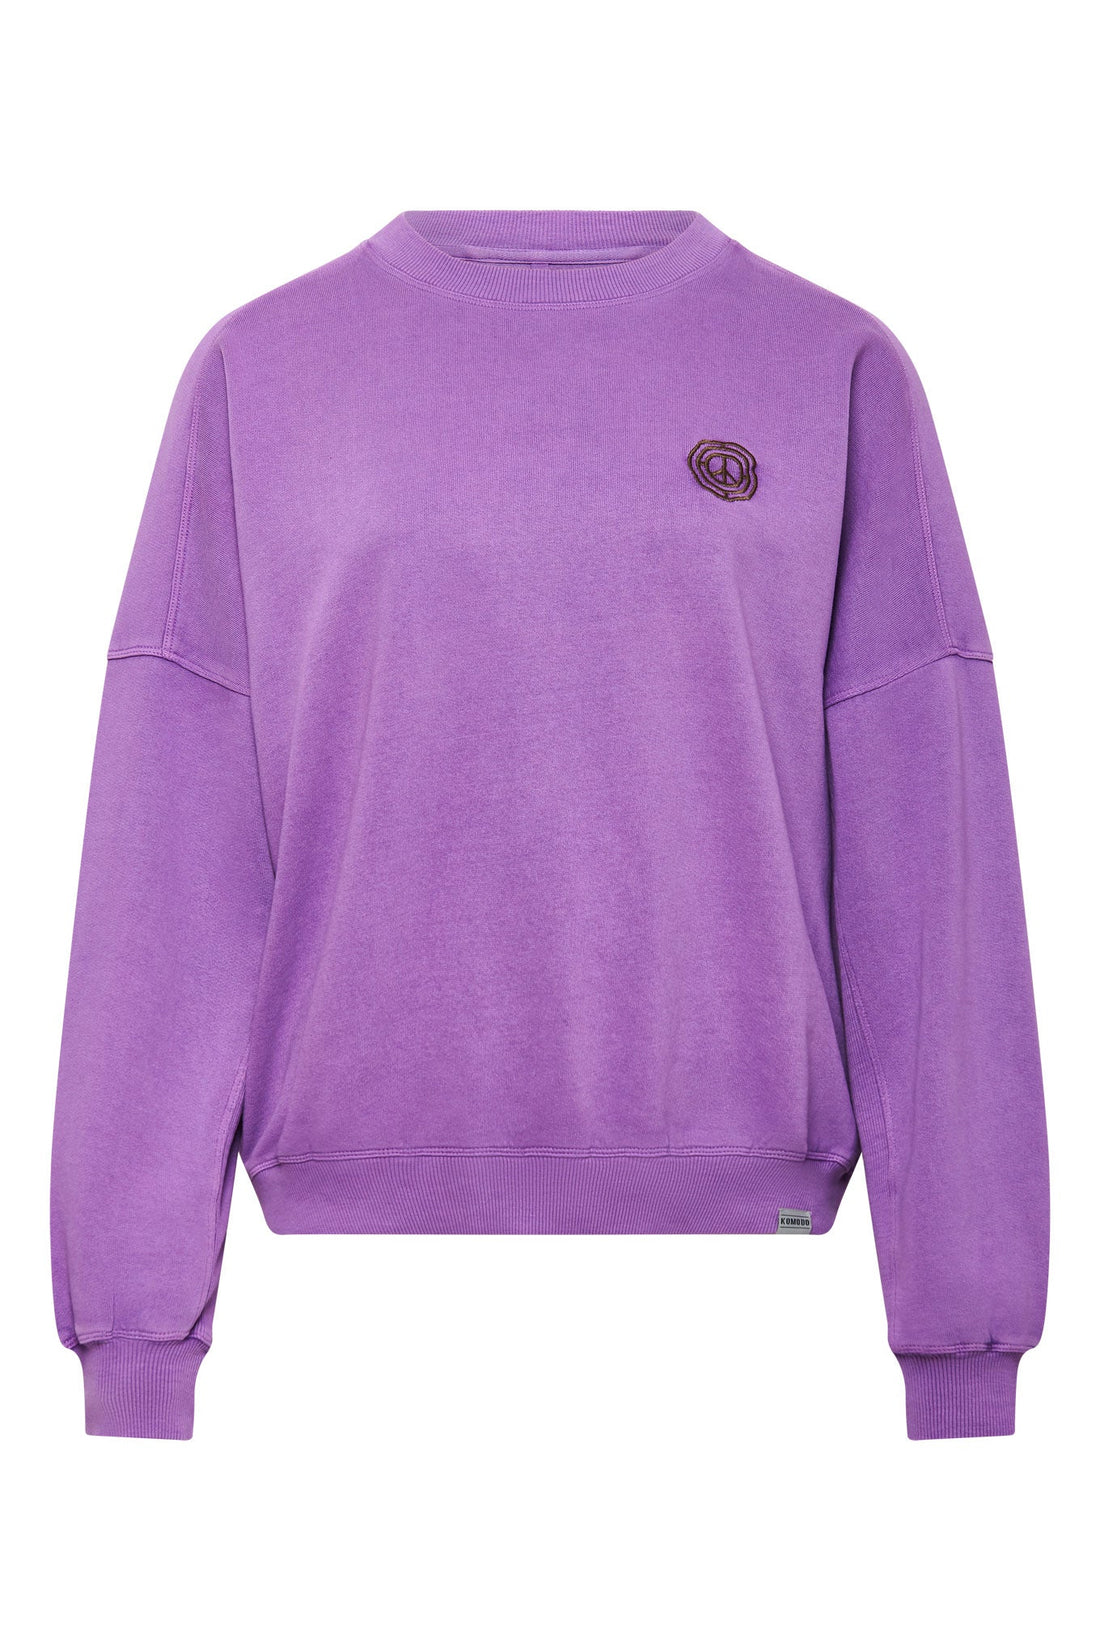 DAWN Sweater Organic Cotton - Lilac